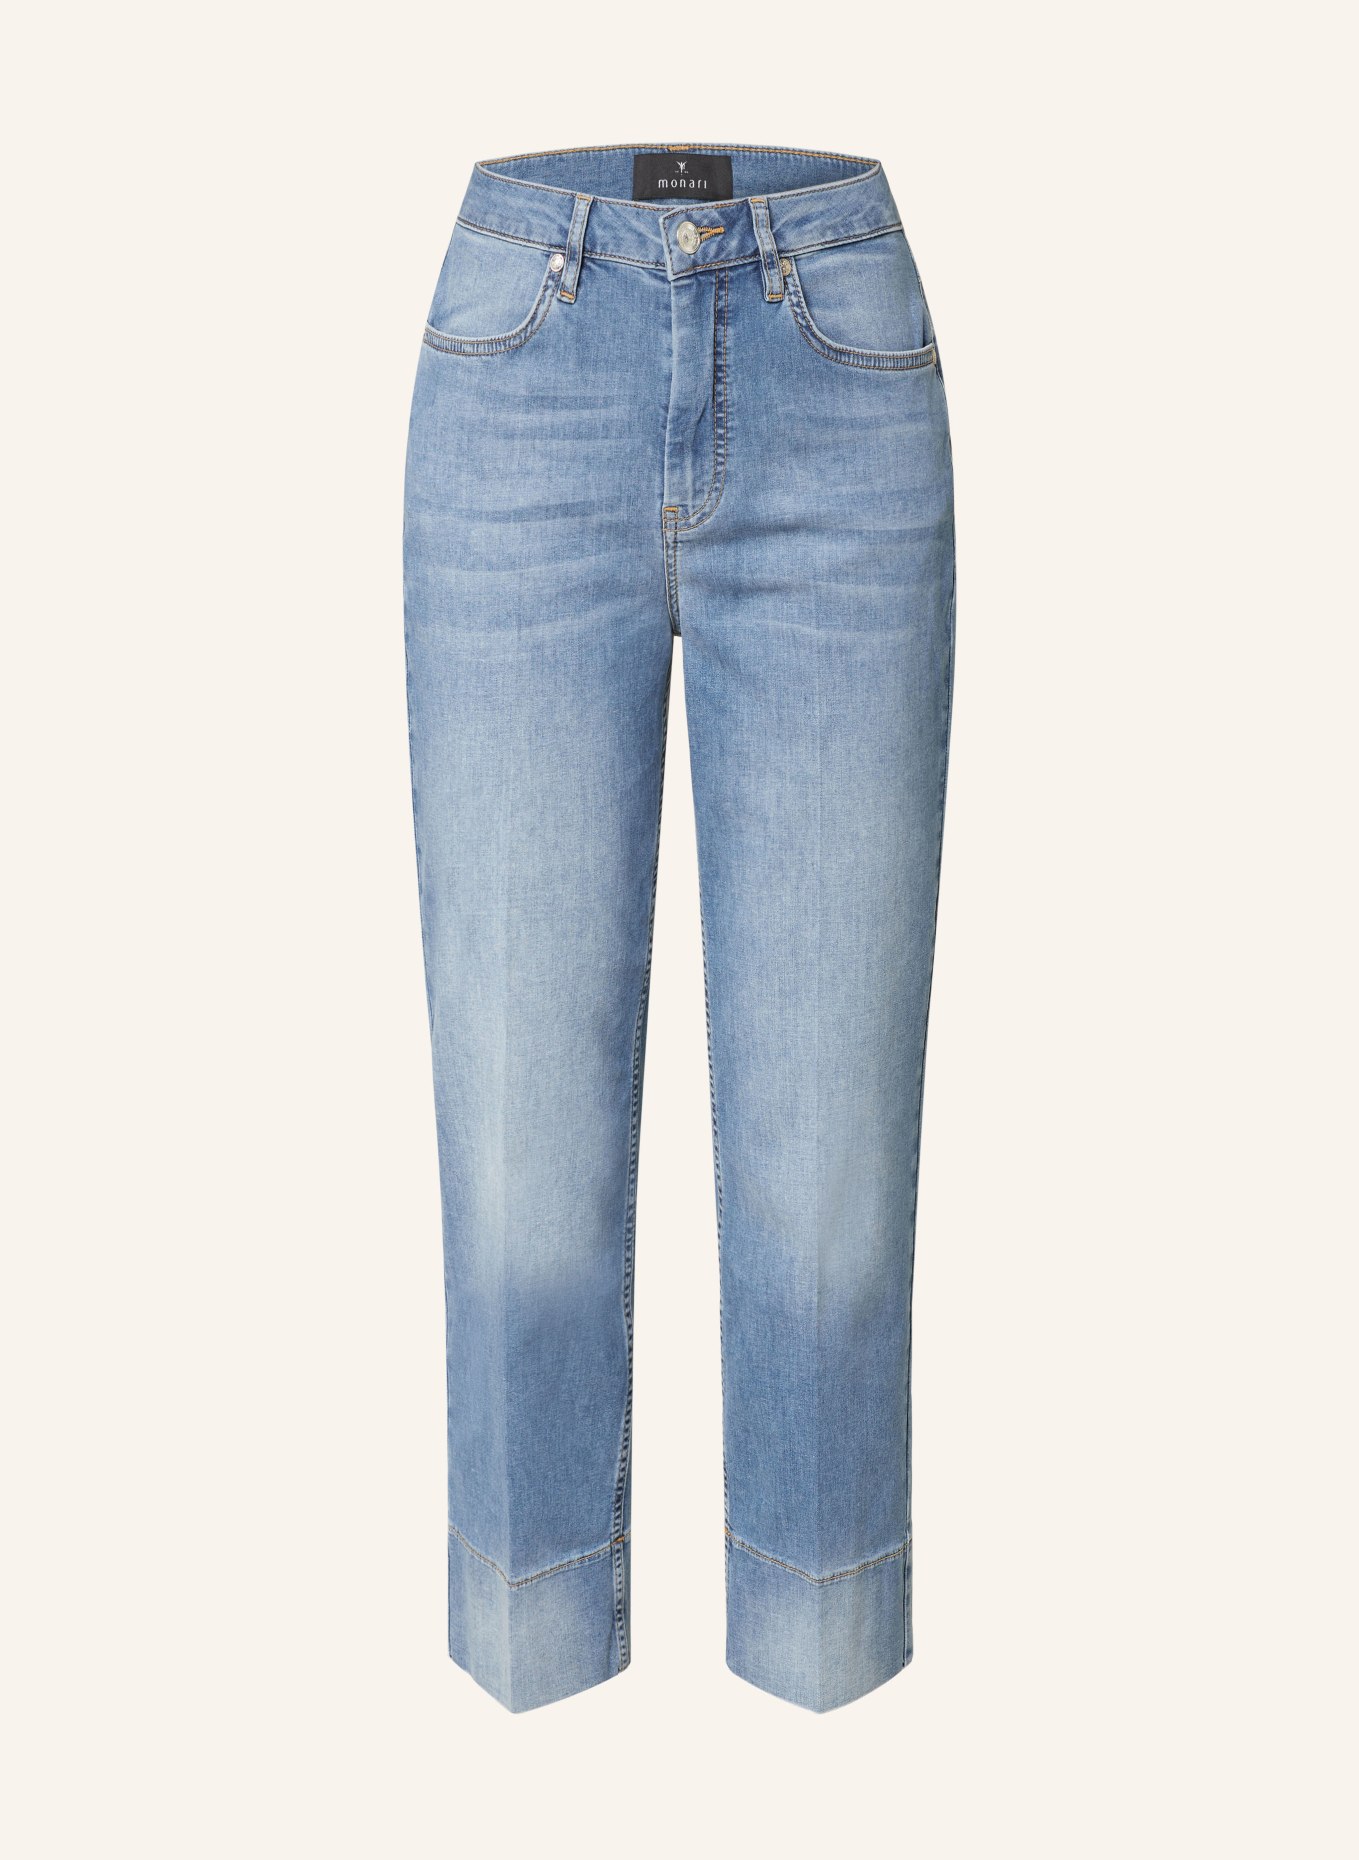 monari 7/8 jeans, Color: 750 jeans (Image 1)